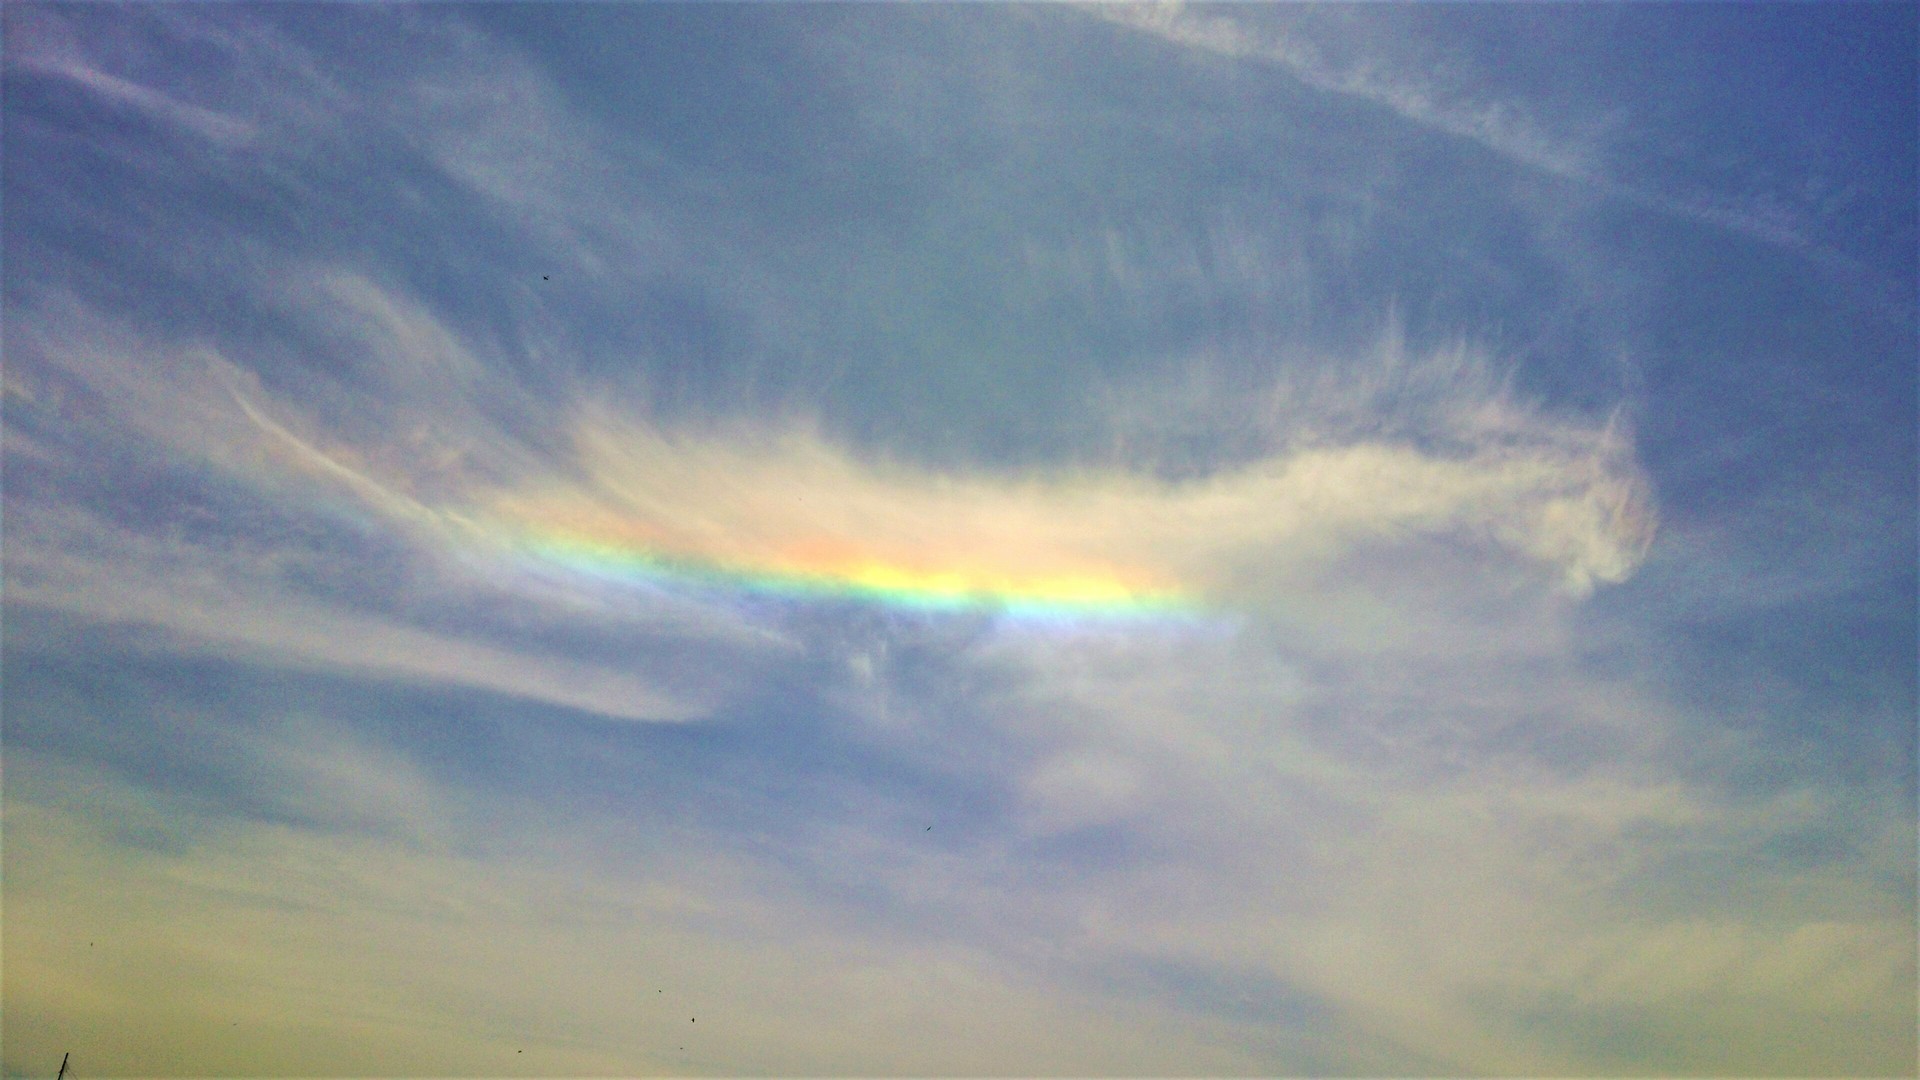 天使のメッセージ 虹とユニコーンみたいな雲と Hanapanda13の日記